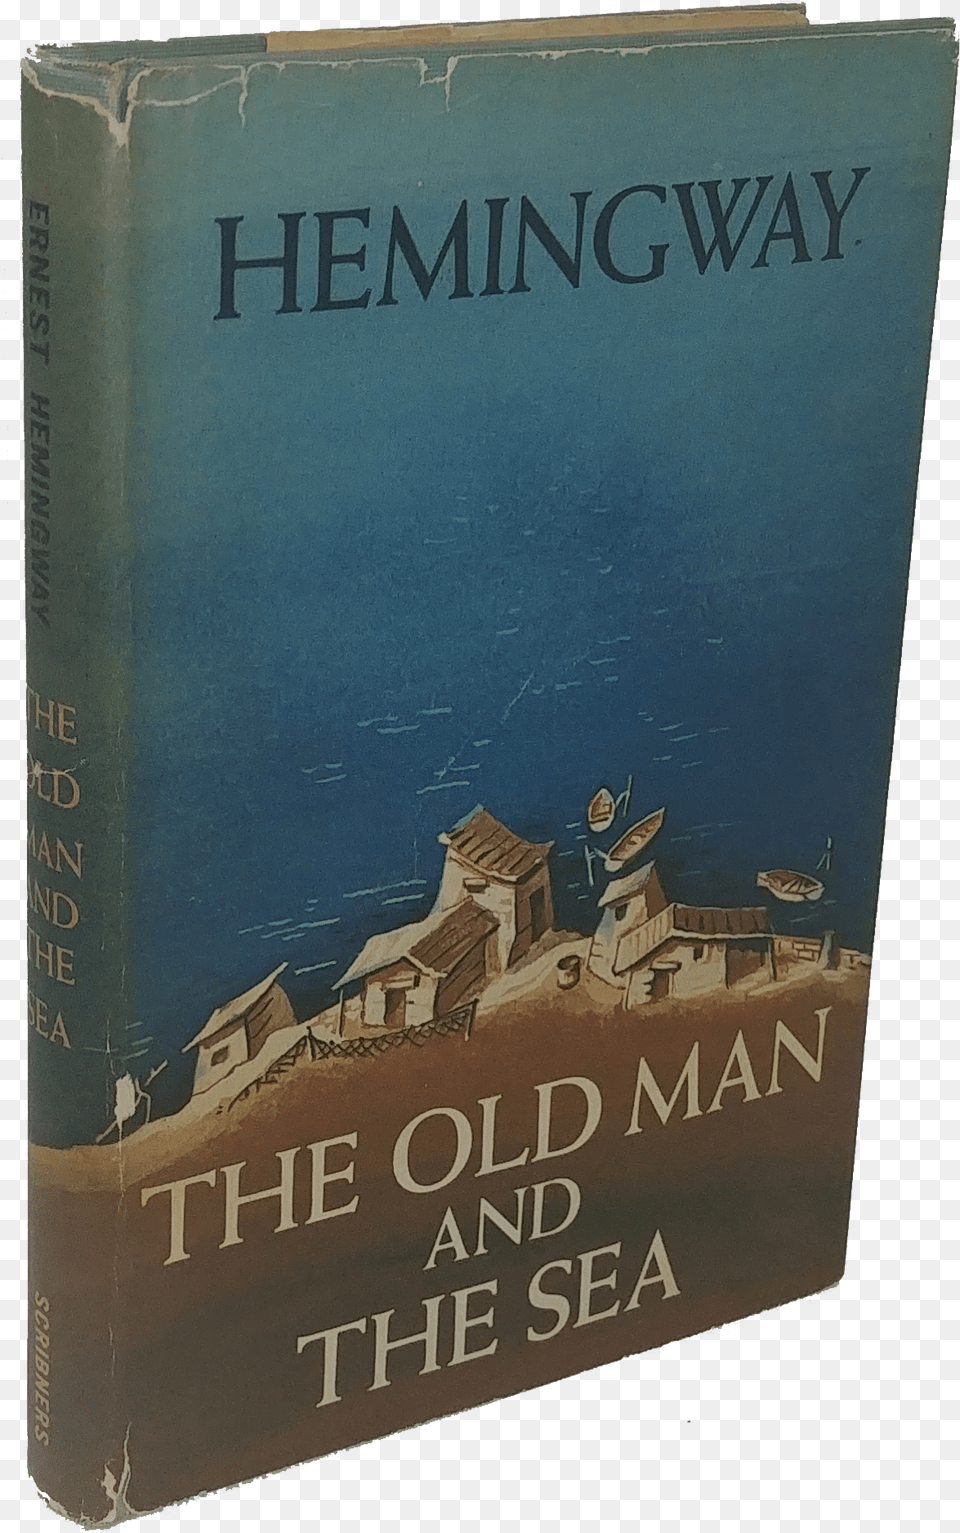 The Old Man And The Sea Old Man And The Sea, Book, Novel, Publication Png Image